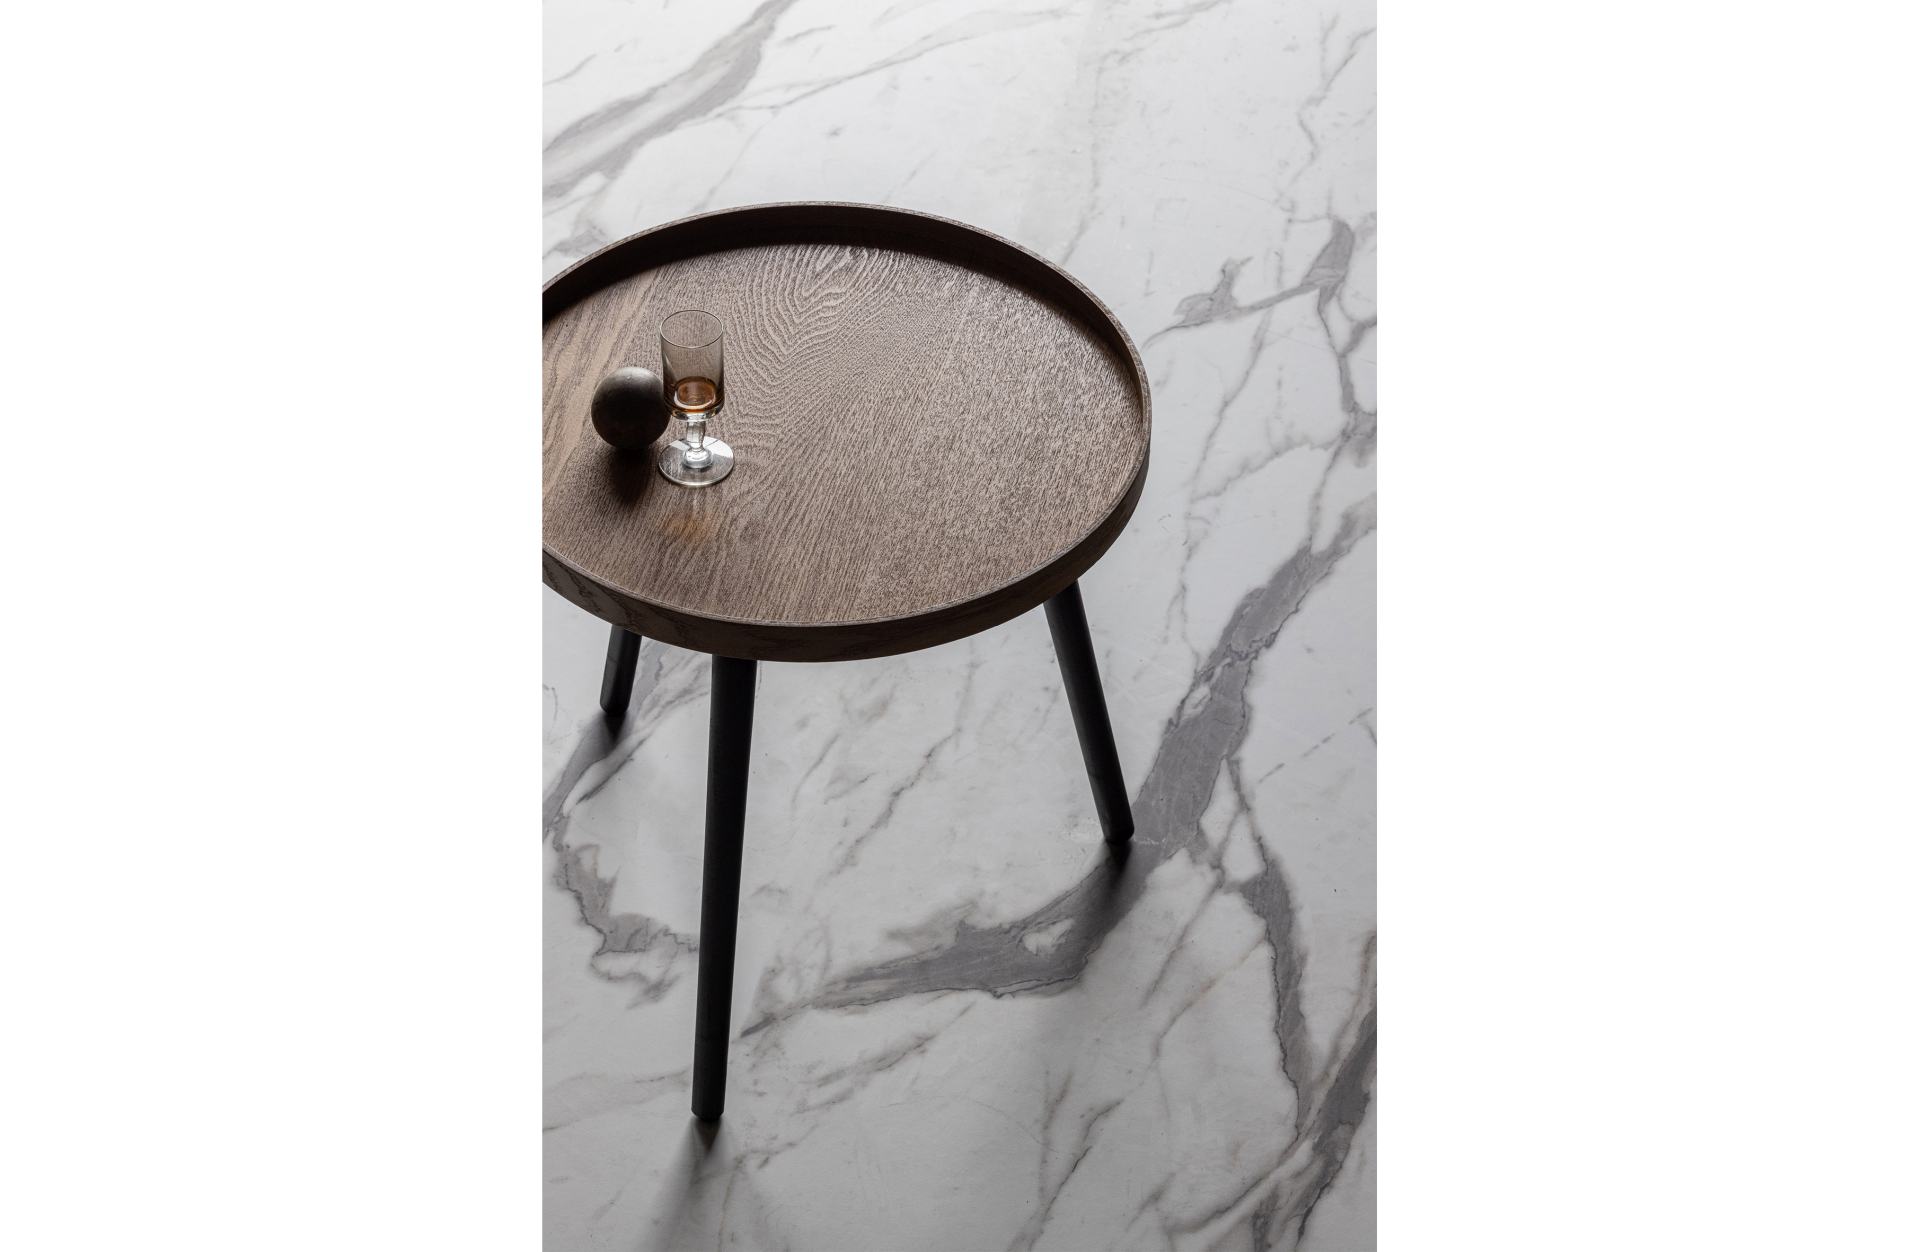 Der Beistelltisch Mesa überzeugt mit seinem schlichtem Design. Die Tischplatte wurde aus MDF Holz gefertigt und die Tischbeine sind aus Kiefernholz. Der Beistelltisch hat einen natürlichen Farbton.